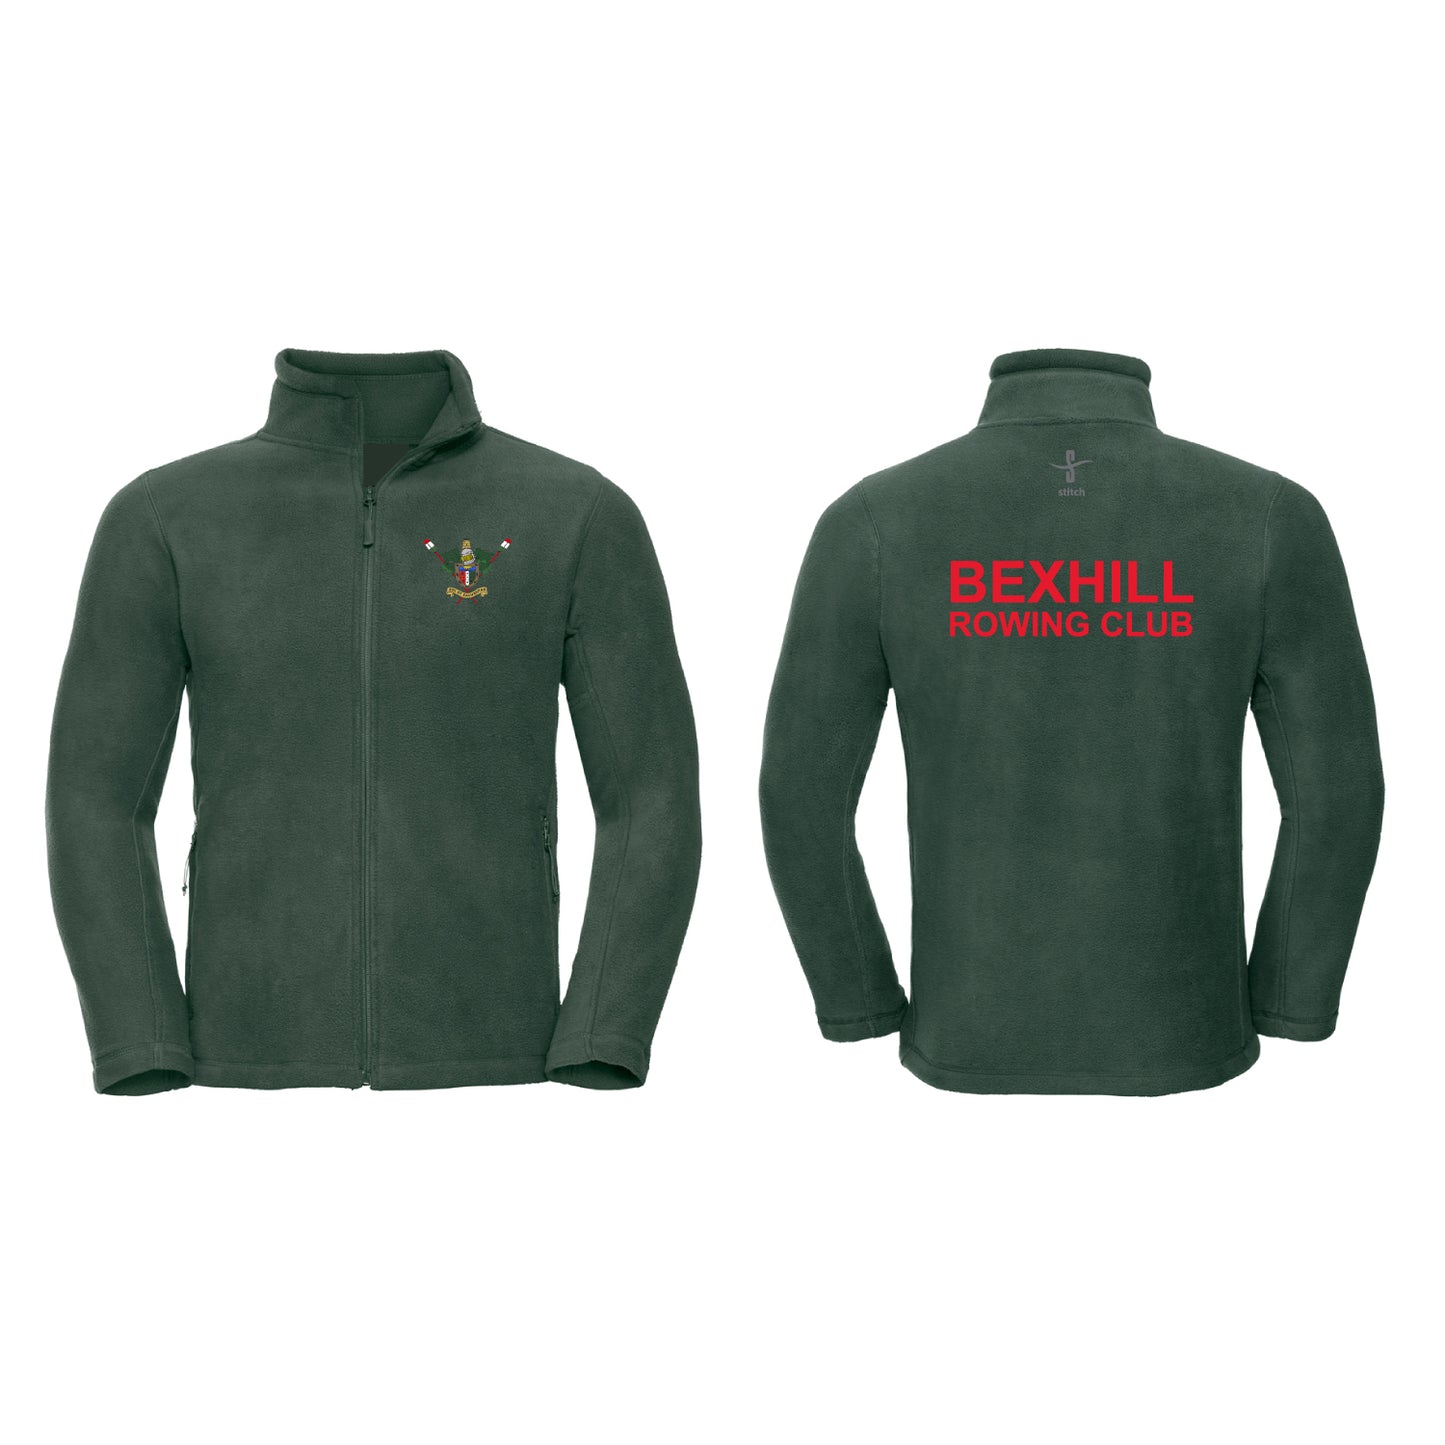 Bexhill Rowing Club Full Zip Fleece